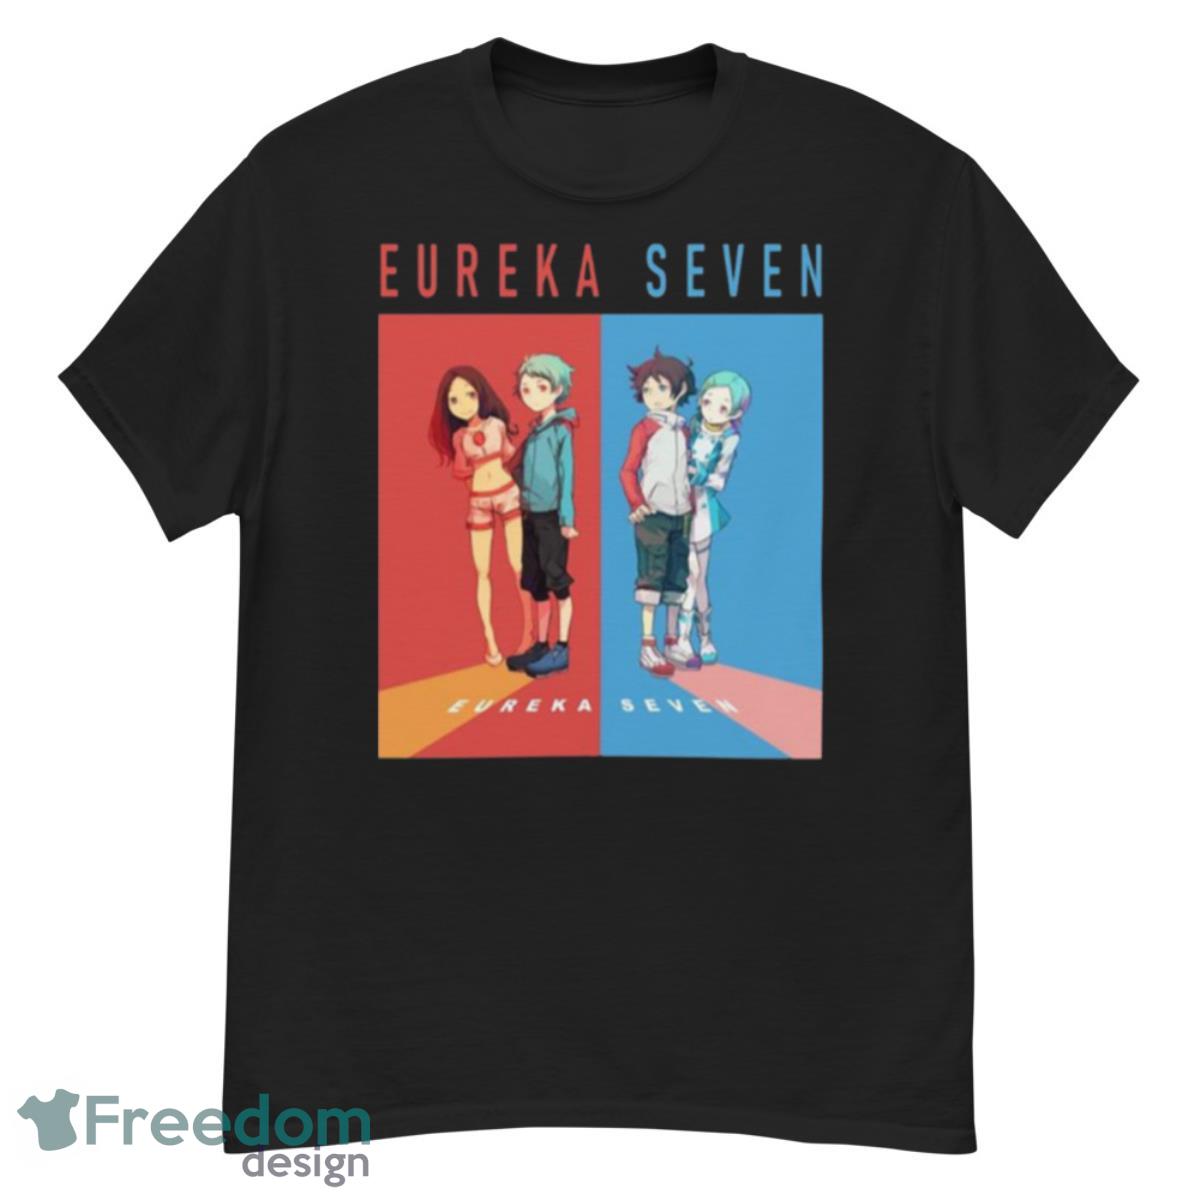 Cute Couple In Eureka Seven shirt - G500 Men’s Classic T-Shirt